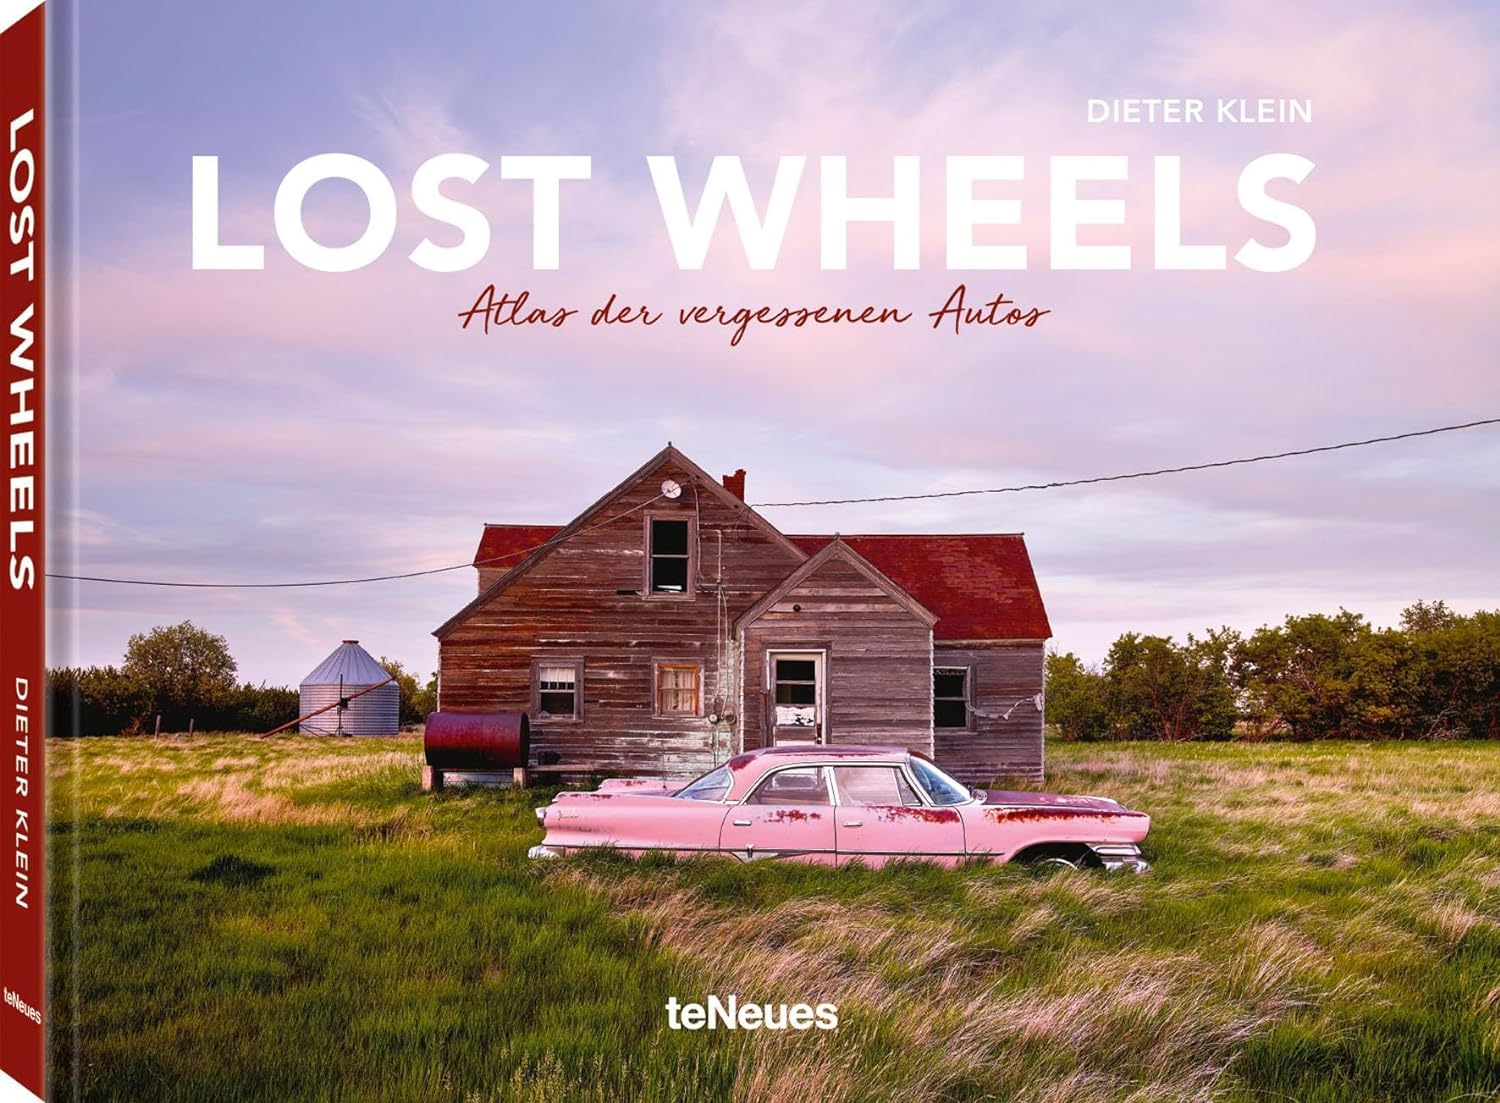 Lost Wheels, Atlas des voitures oubliées